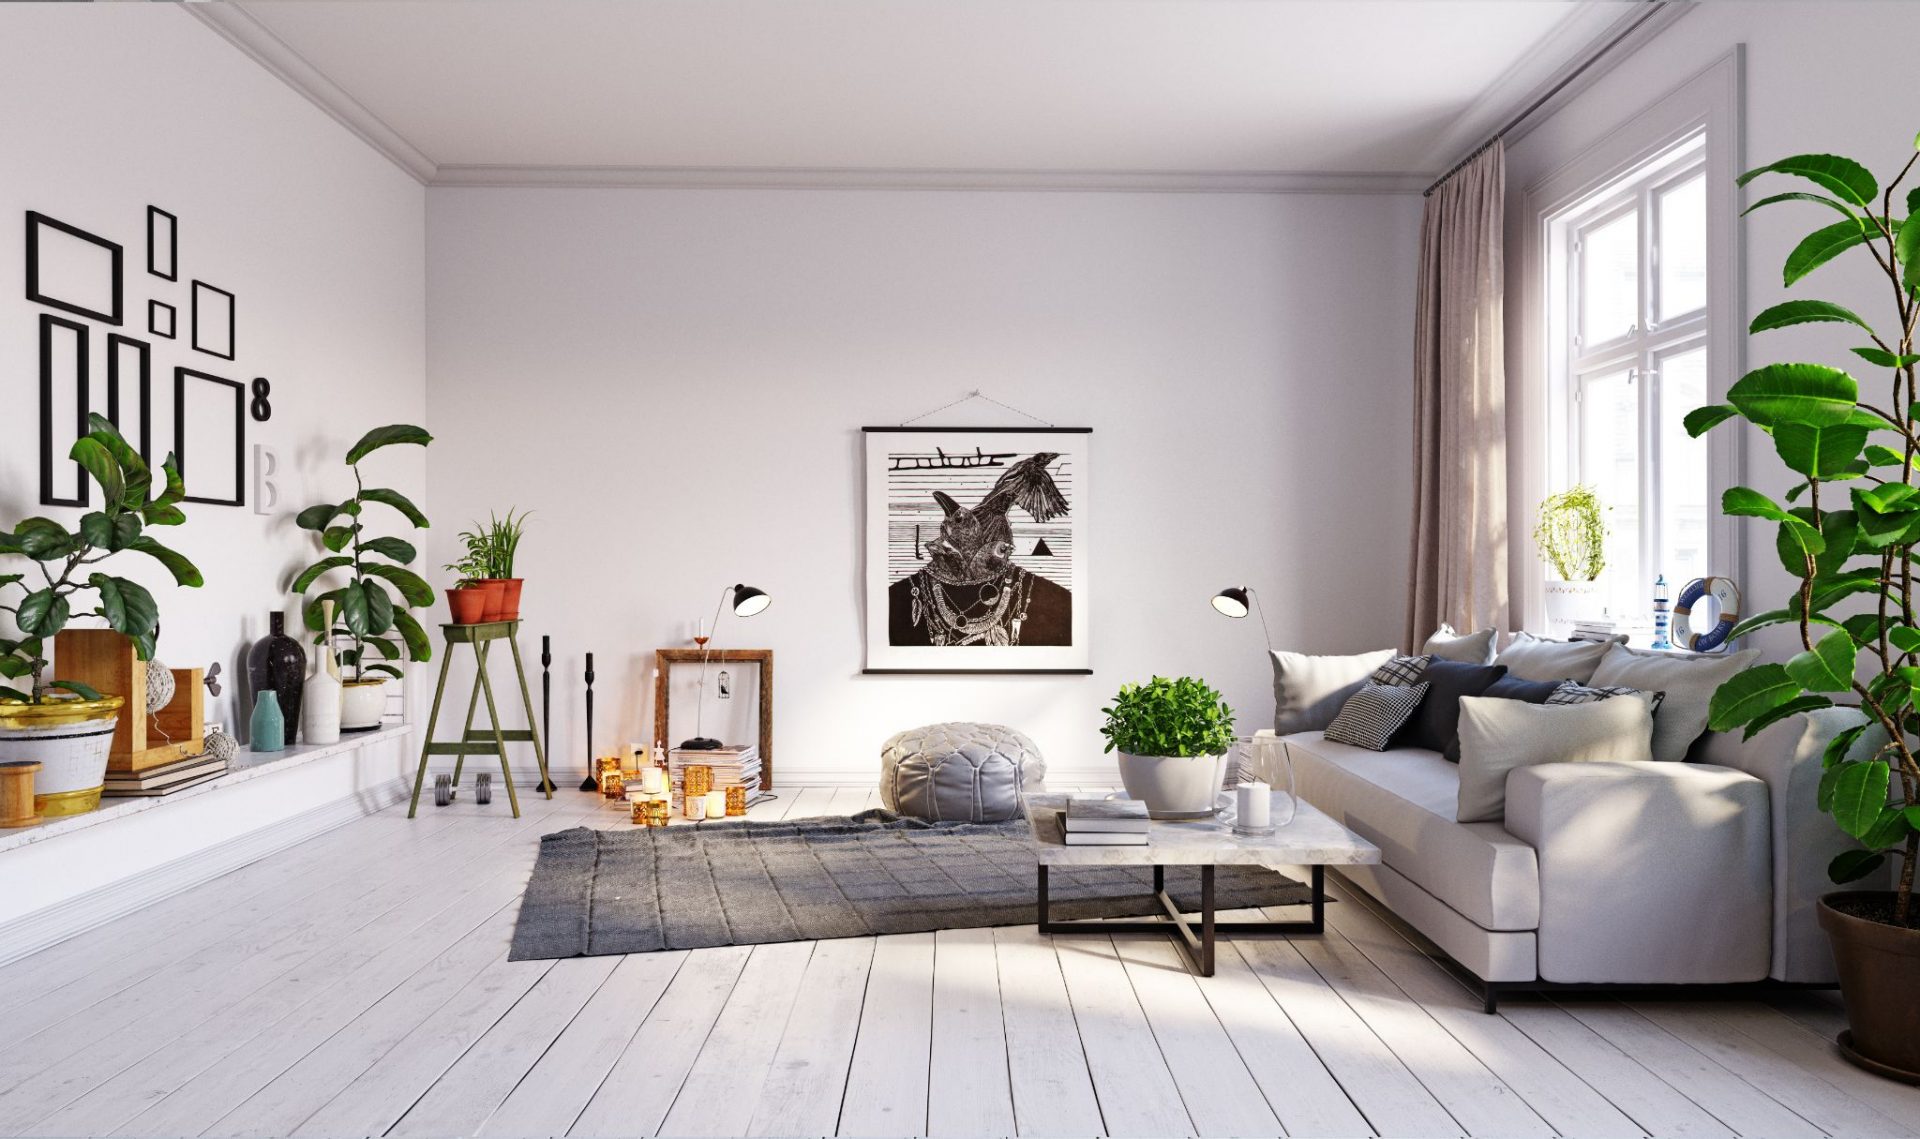 Deens Vervolgen genie How to Design a Minimalist Home | Universal Iron Doors